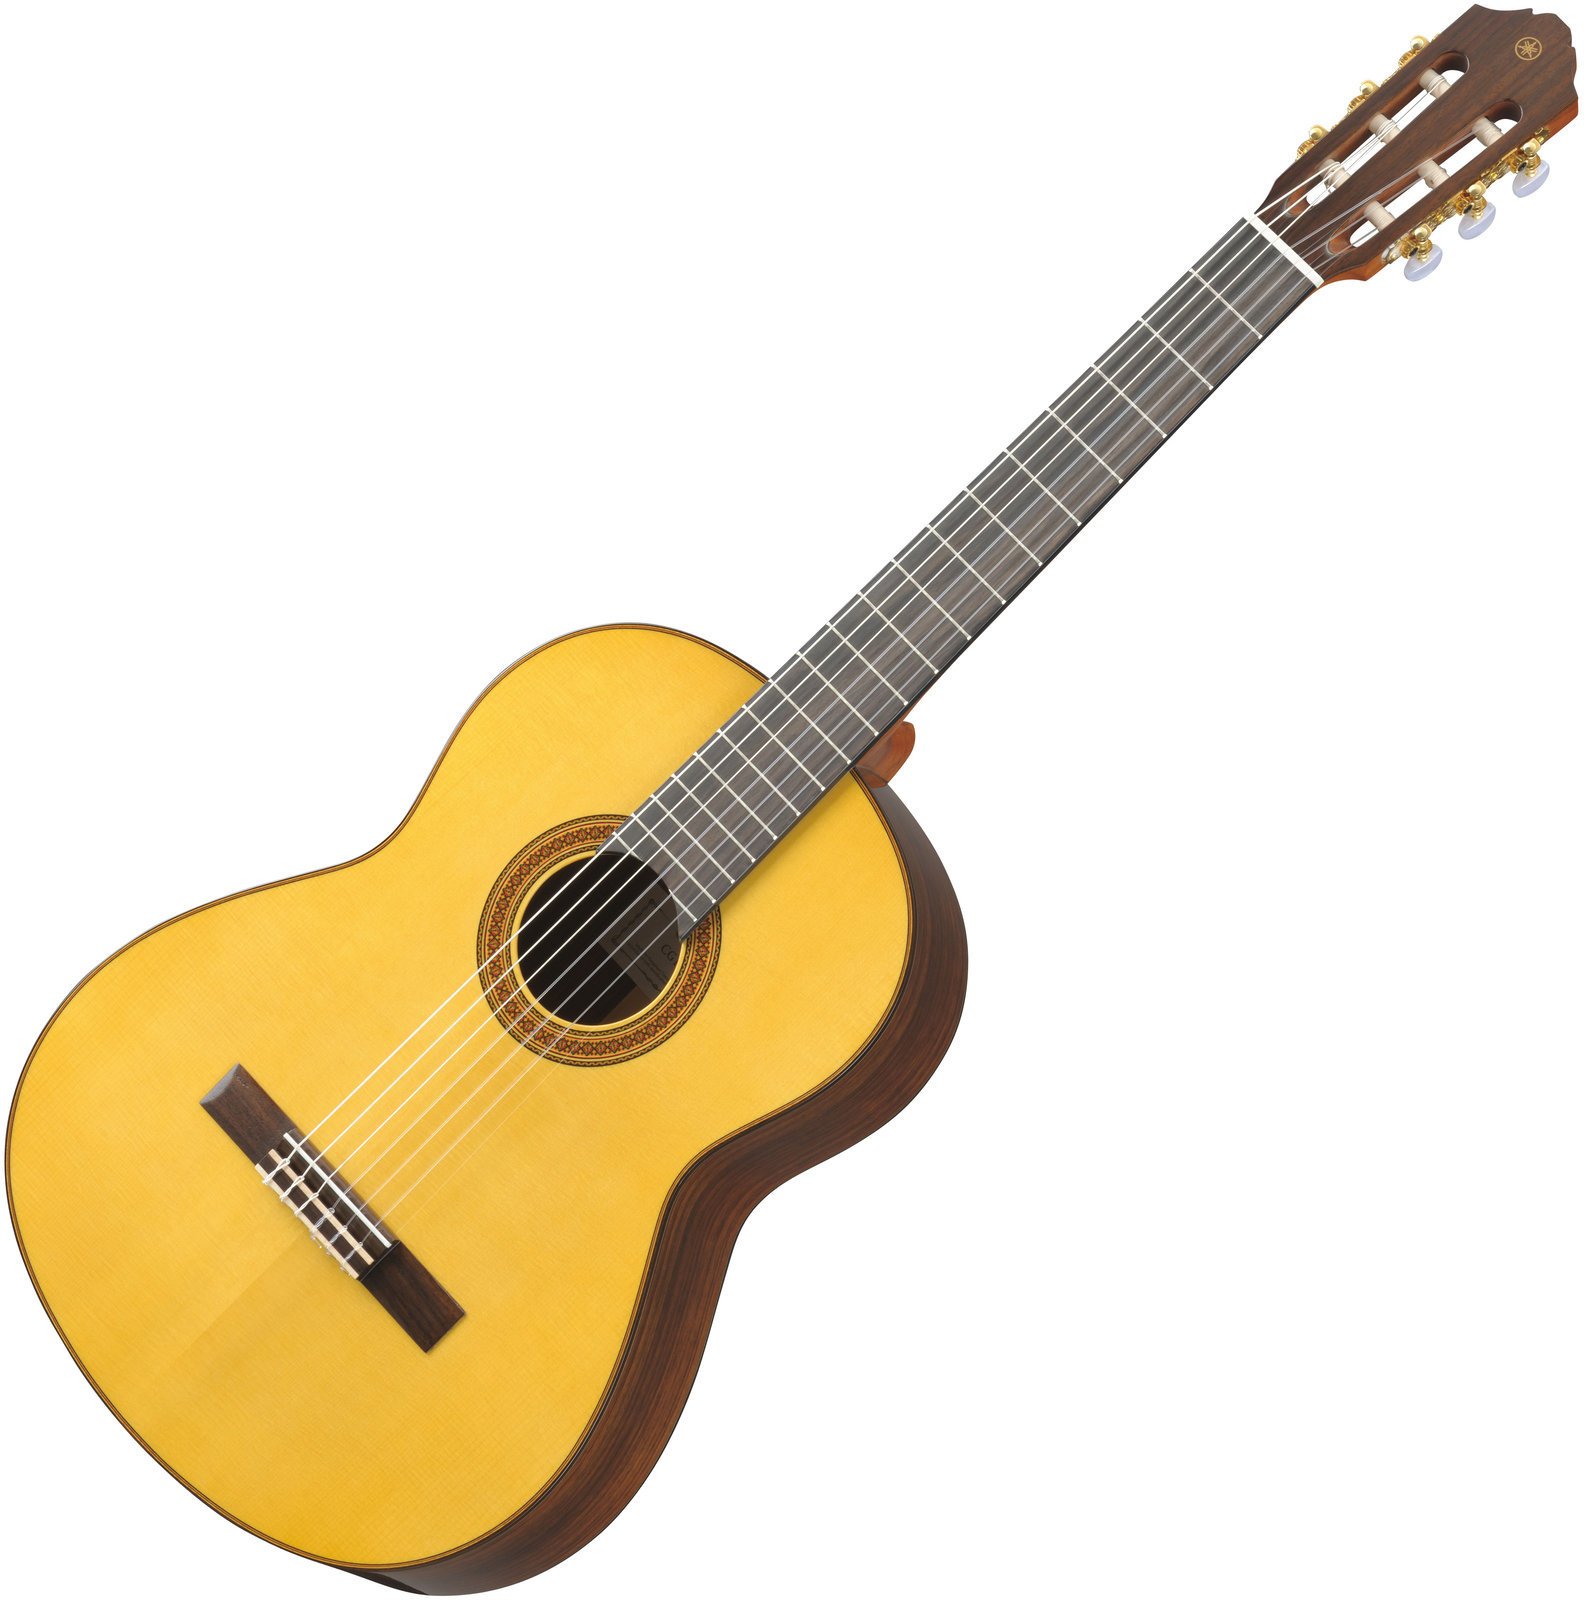 Classical guitar Yamaha CG 182 S 4/4 Natural